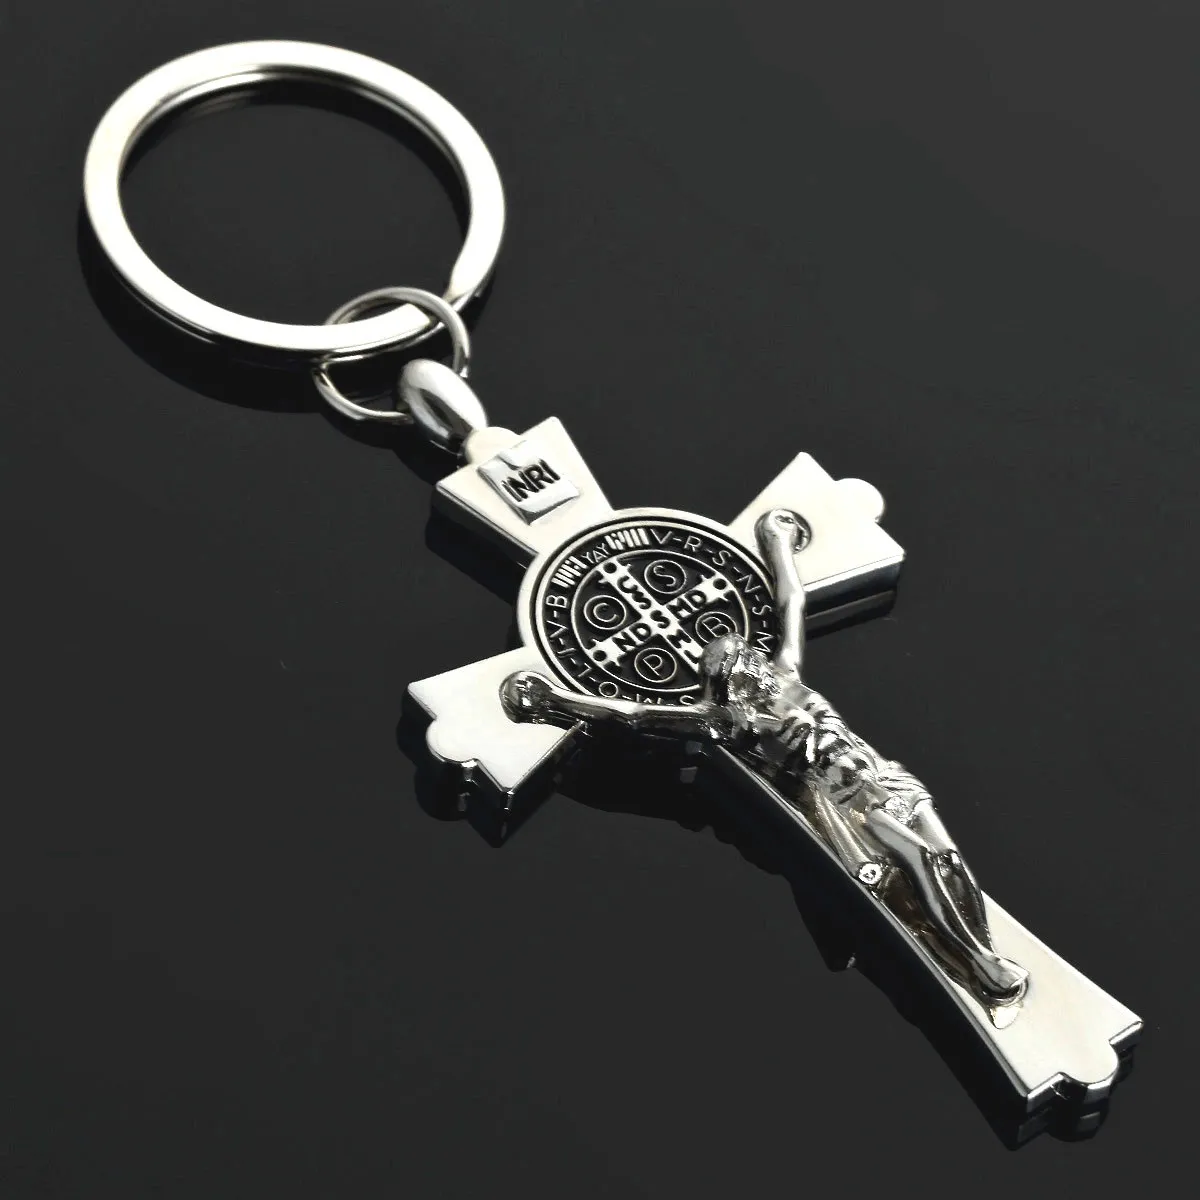 Aço inoxidável prata jesus cristo pingente cruz charme de metal chaveiro anel chave do carro presente da jóia religiosa titular chave